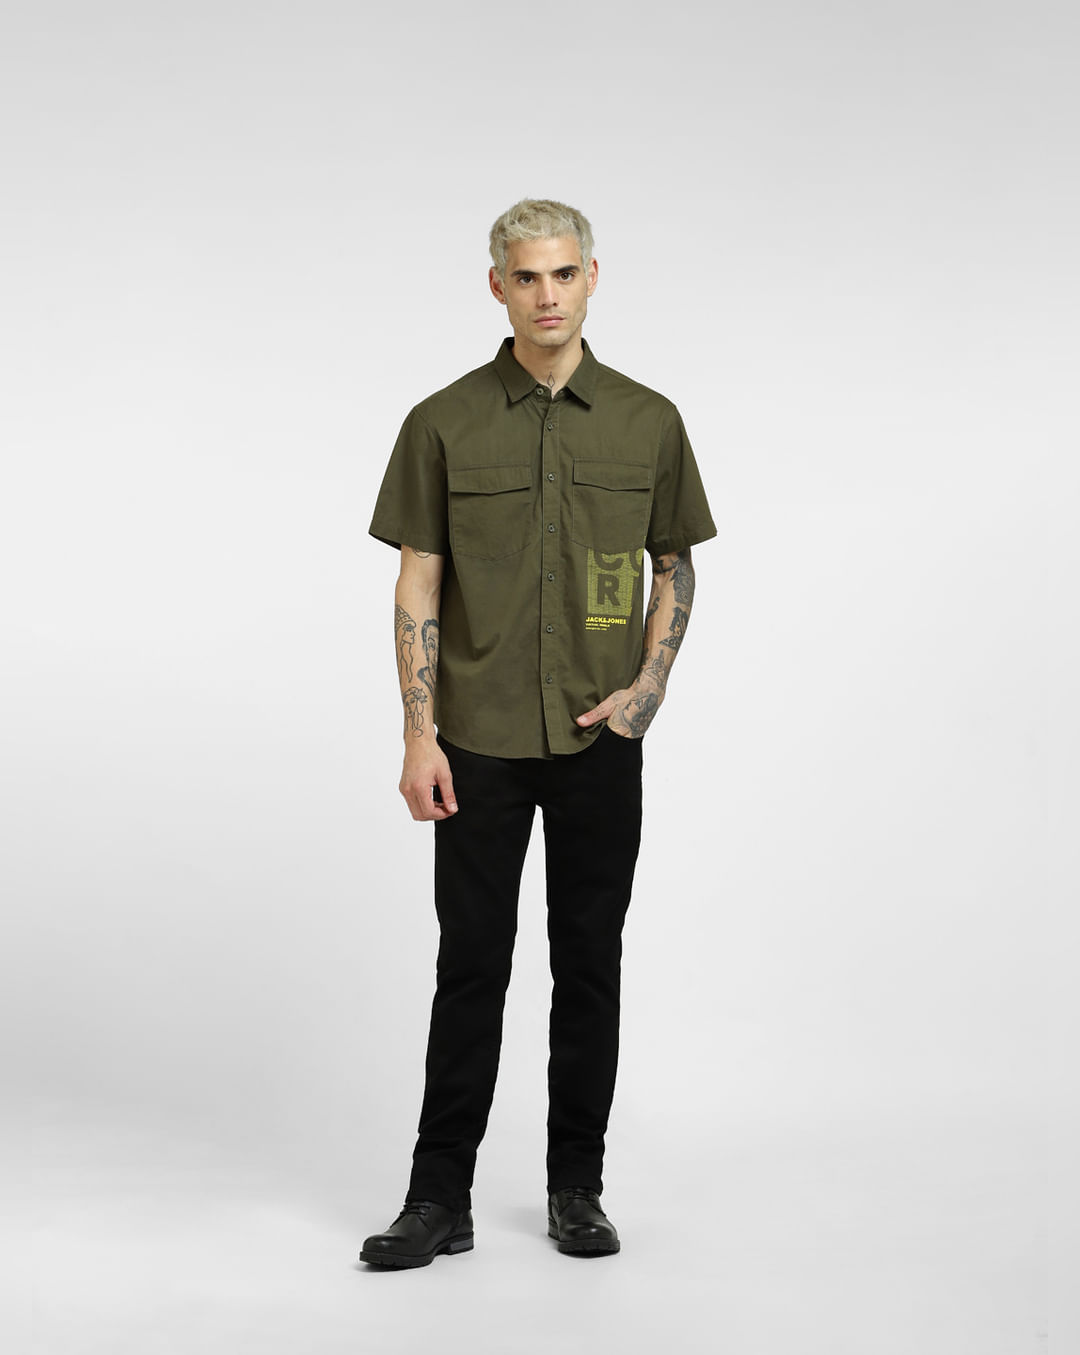 Buy Green Oversized Half Sleeves Shirt for Men